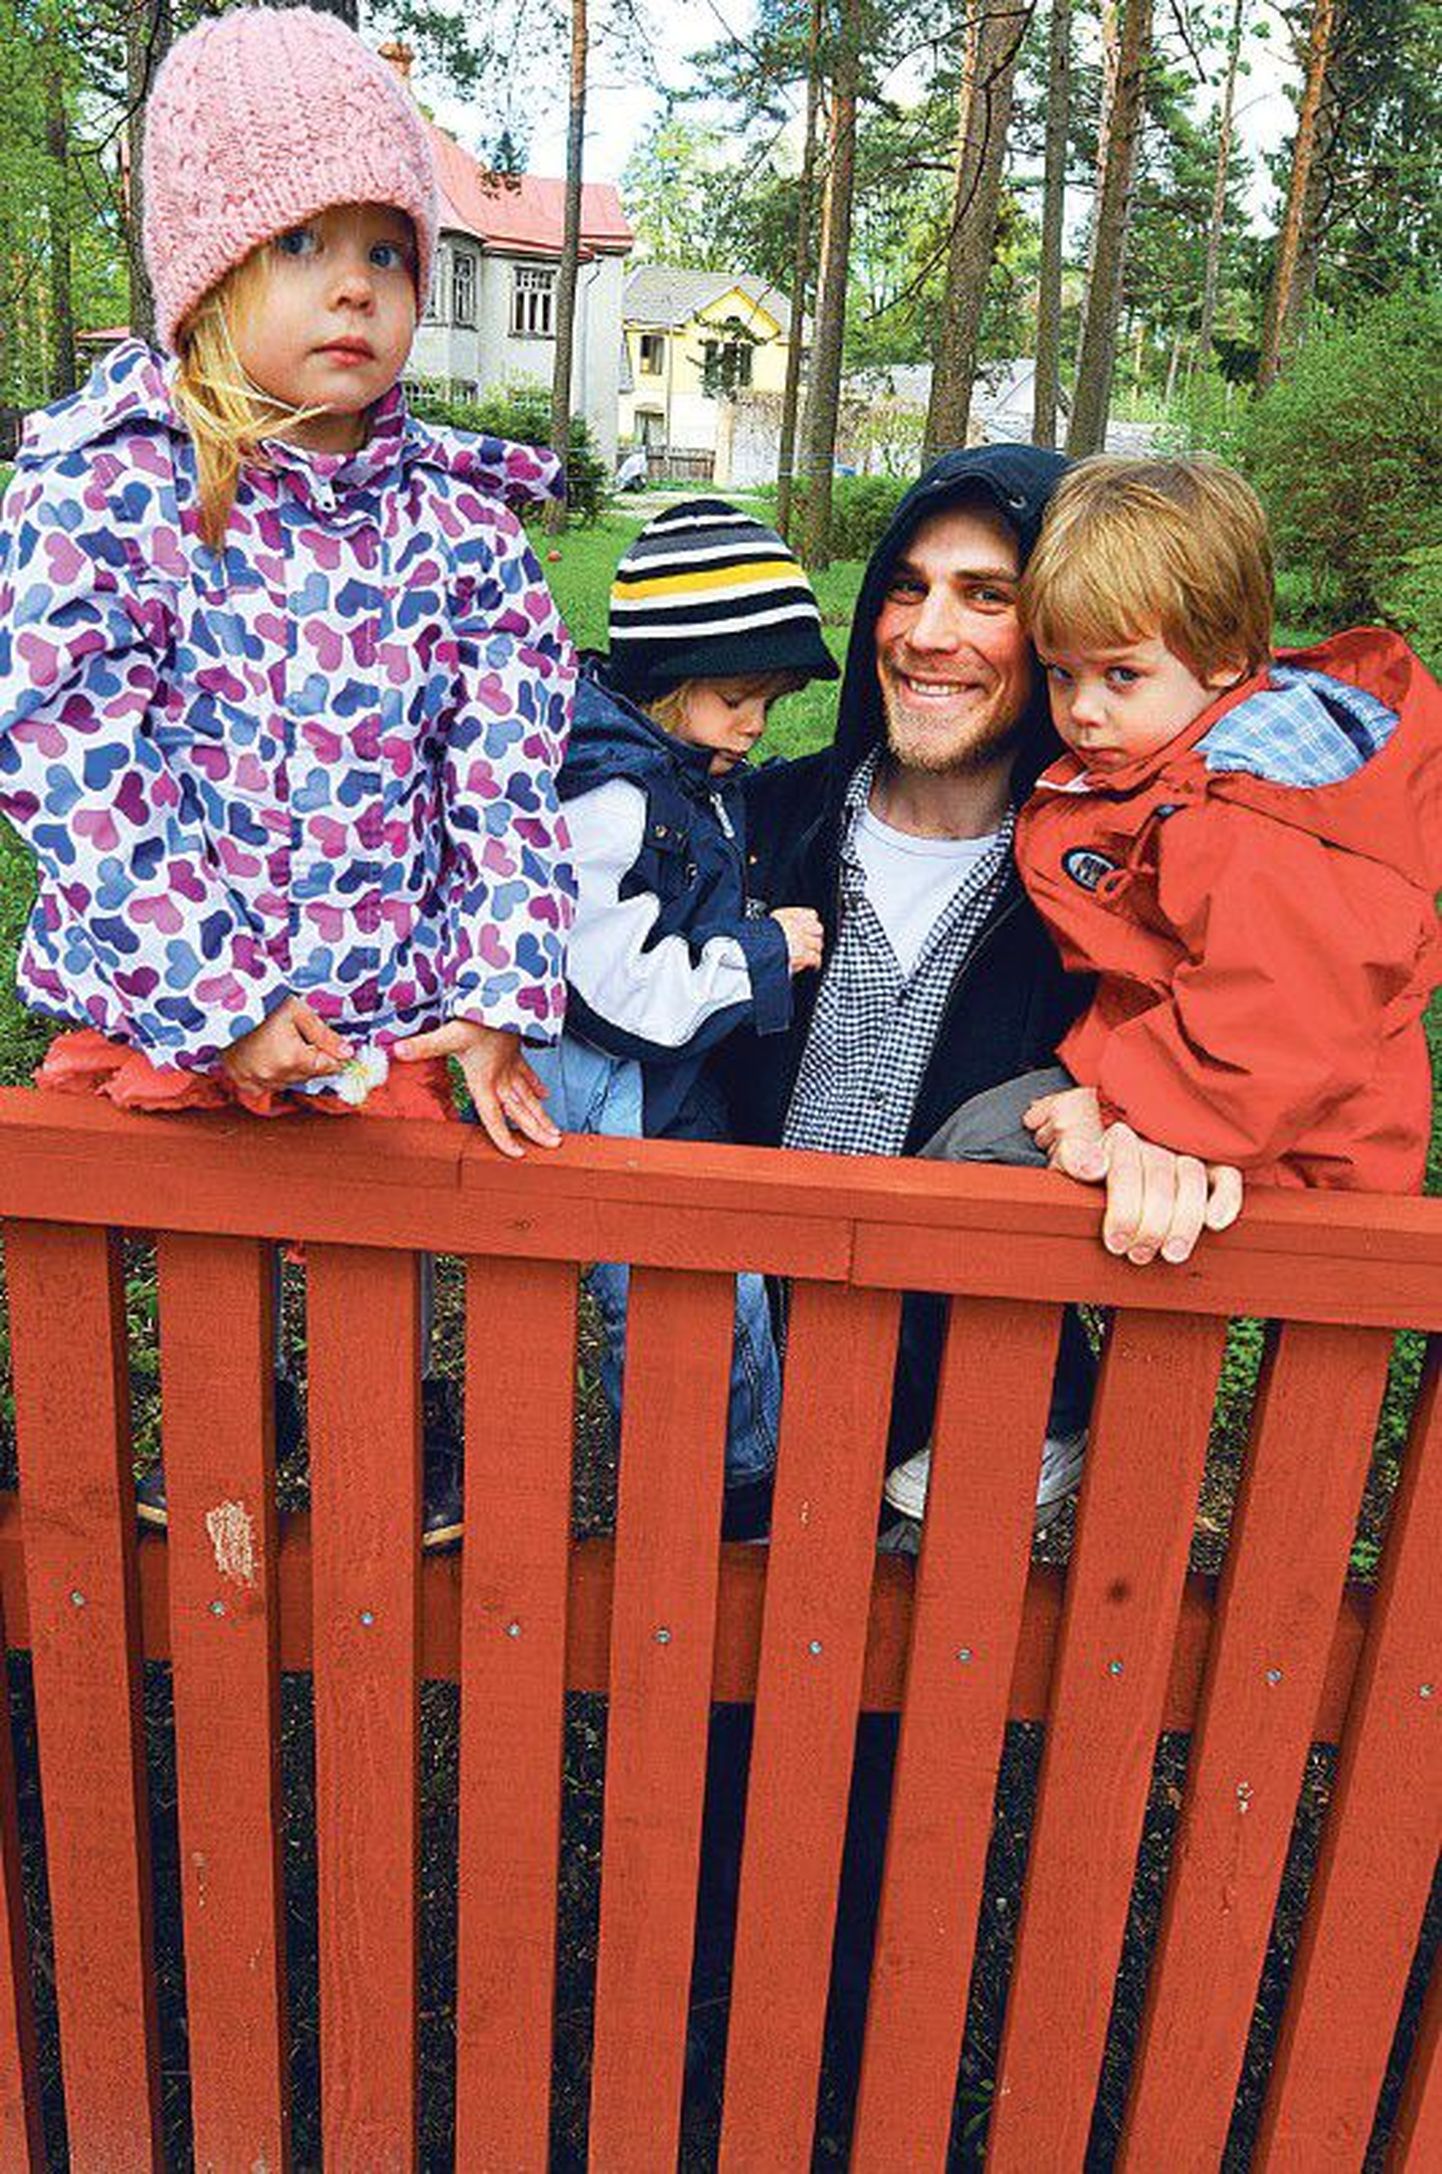 Калев, отец тройняшек Карла (справа), Матиаса и Эте утверждает, что воспитание сразу нескольких детей требует многократной заботы. Снимок иллюстративный.